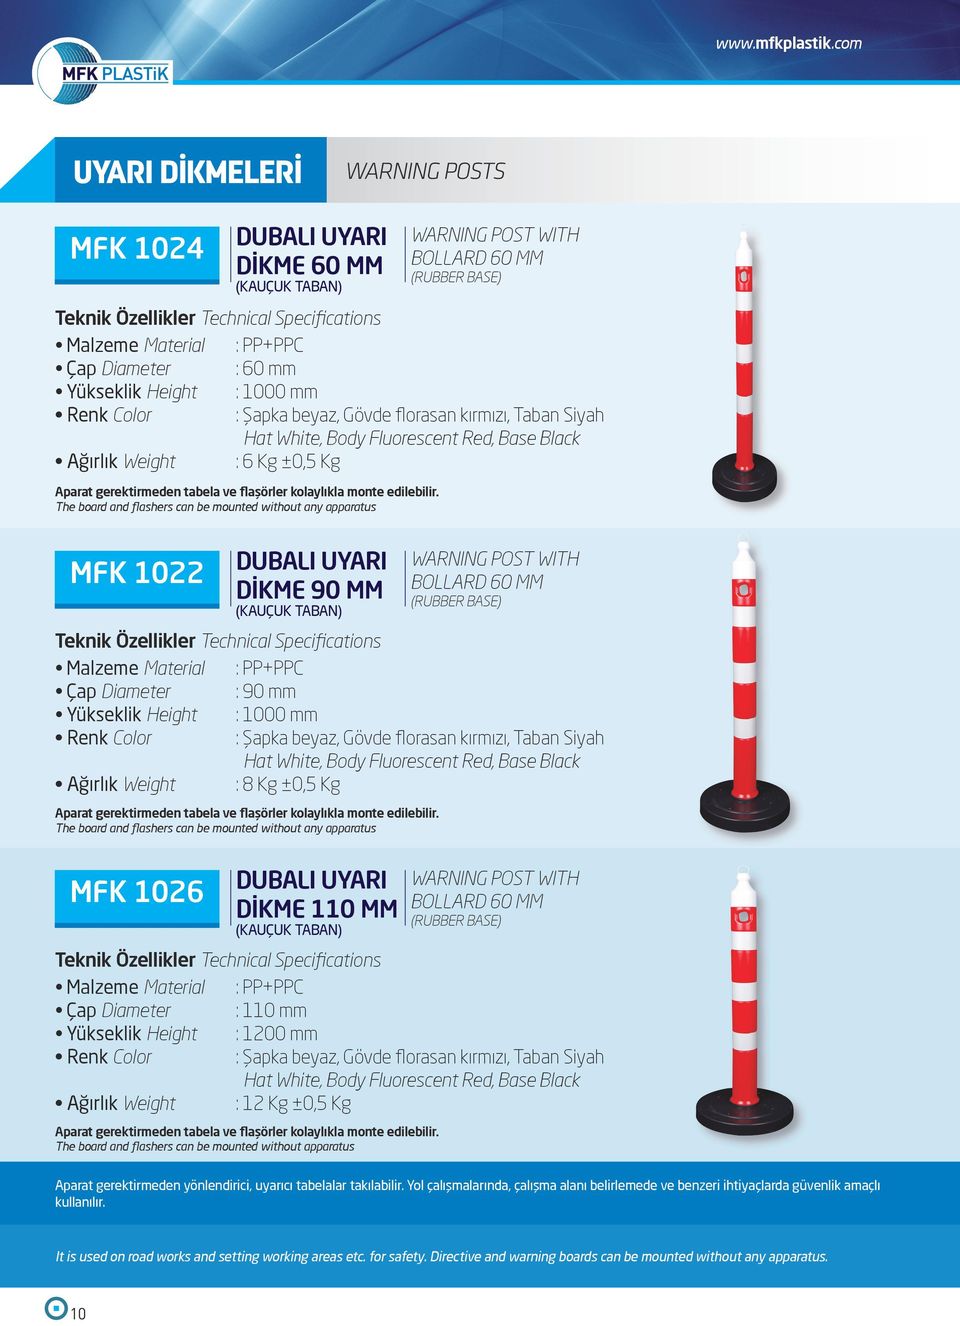 Body Fluorescent Red, Base Black Ağırlık Weight : 6 Kg ±0,5 Kg Aparat gerektirmeden tabela ve flaşörler kolaylıkla monte edilebilir.